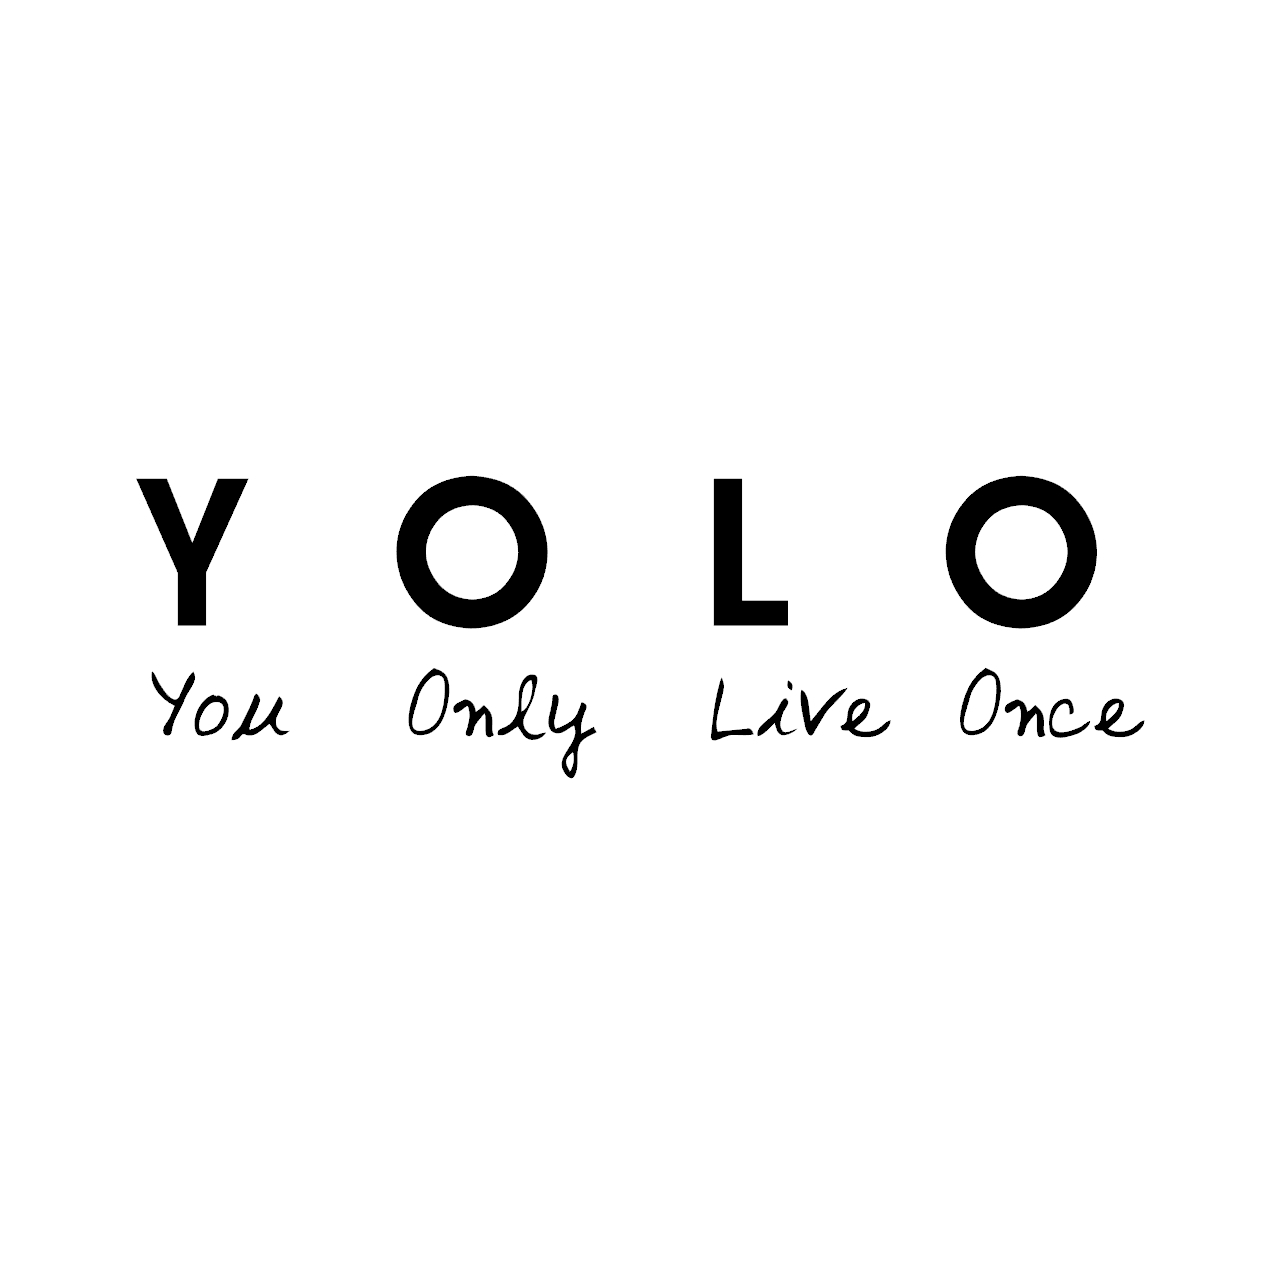 ウォールステッカー 名言 Yolo You Only Live Once 黒 光沢 Iby アイバイ ウォールステッカー 通販